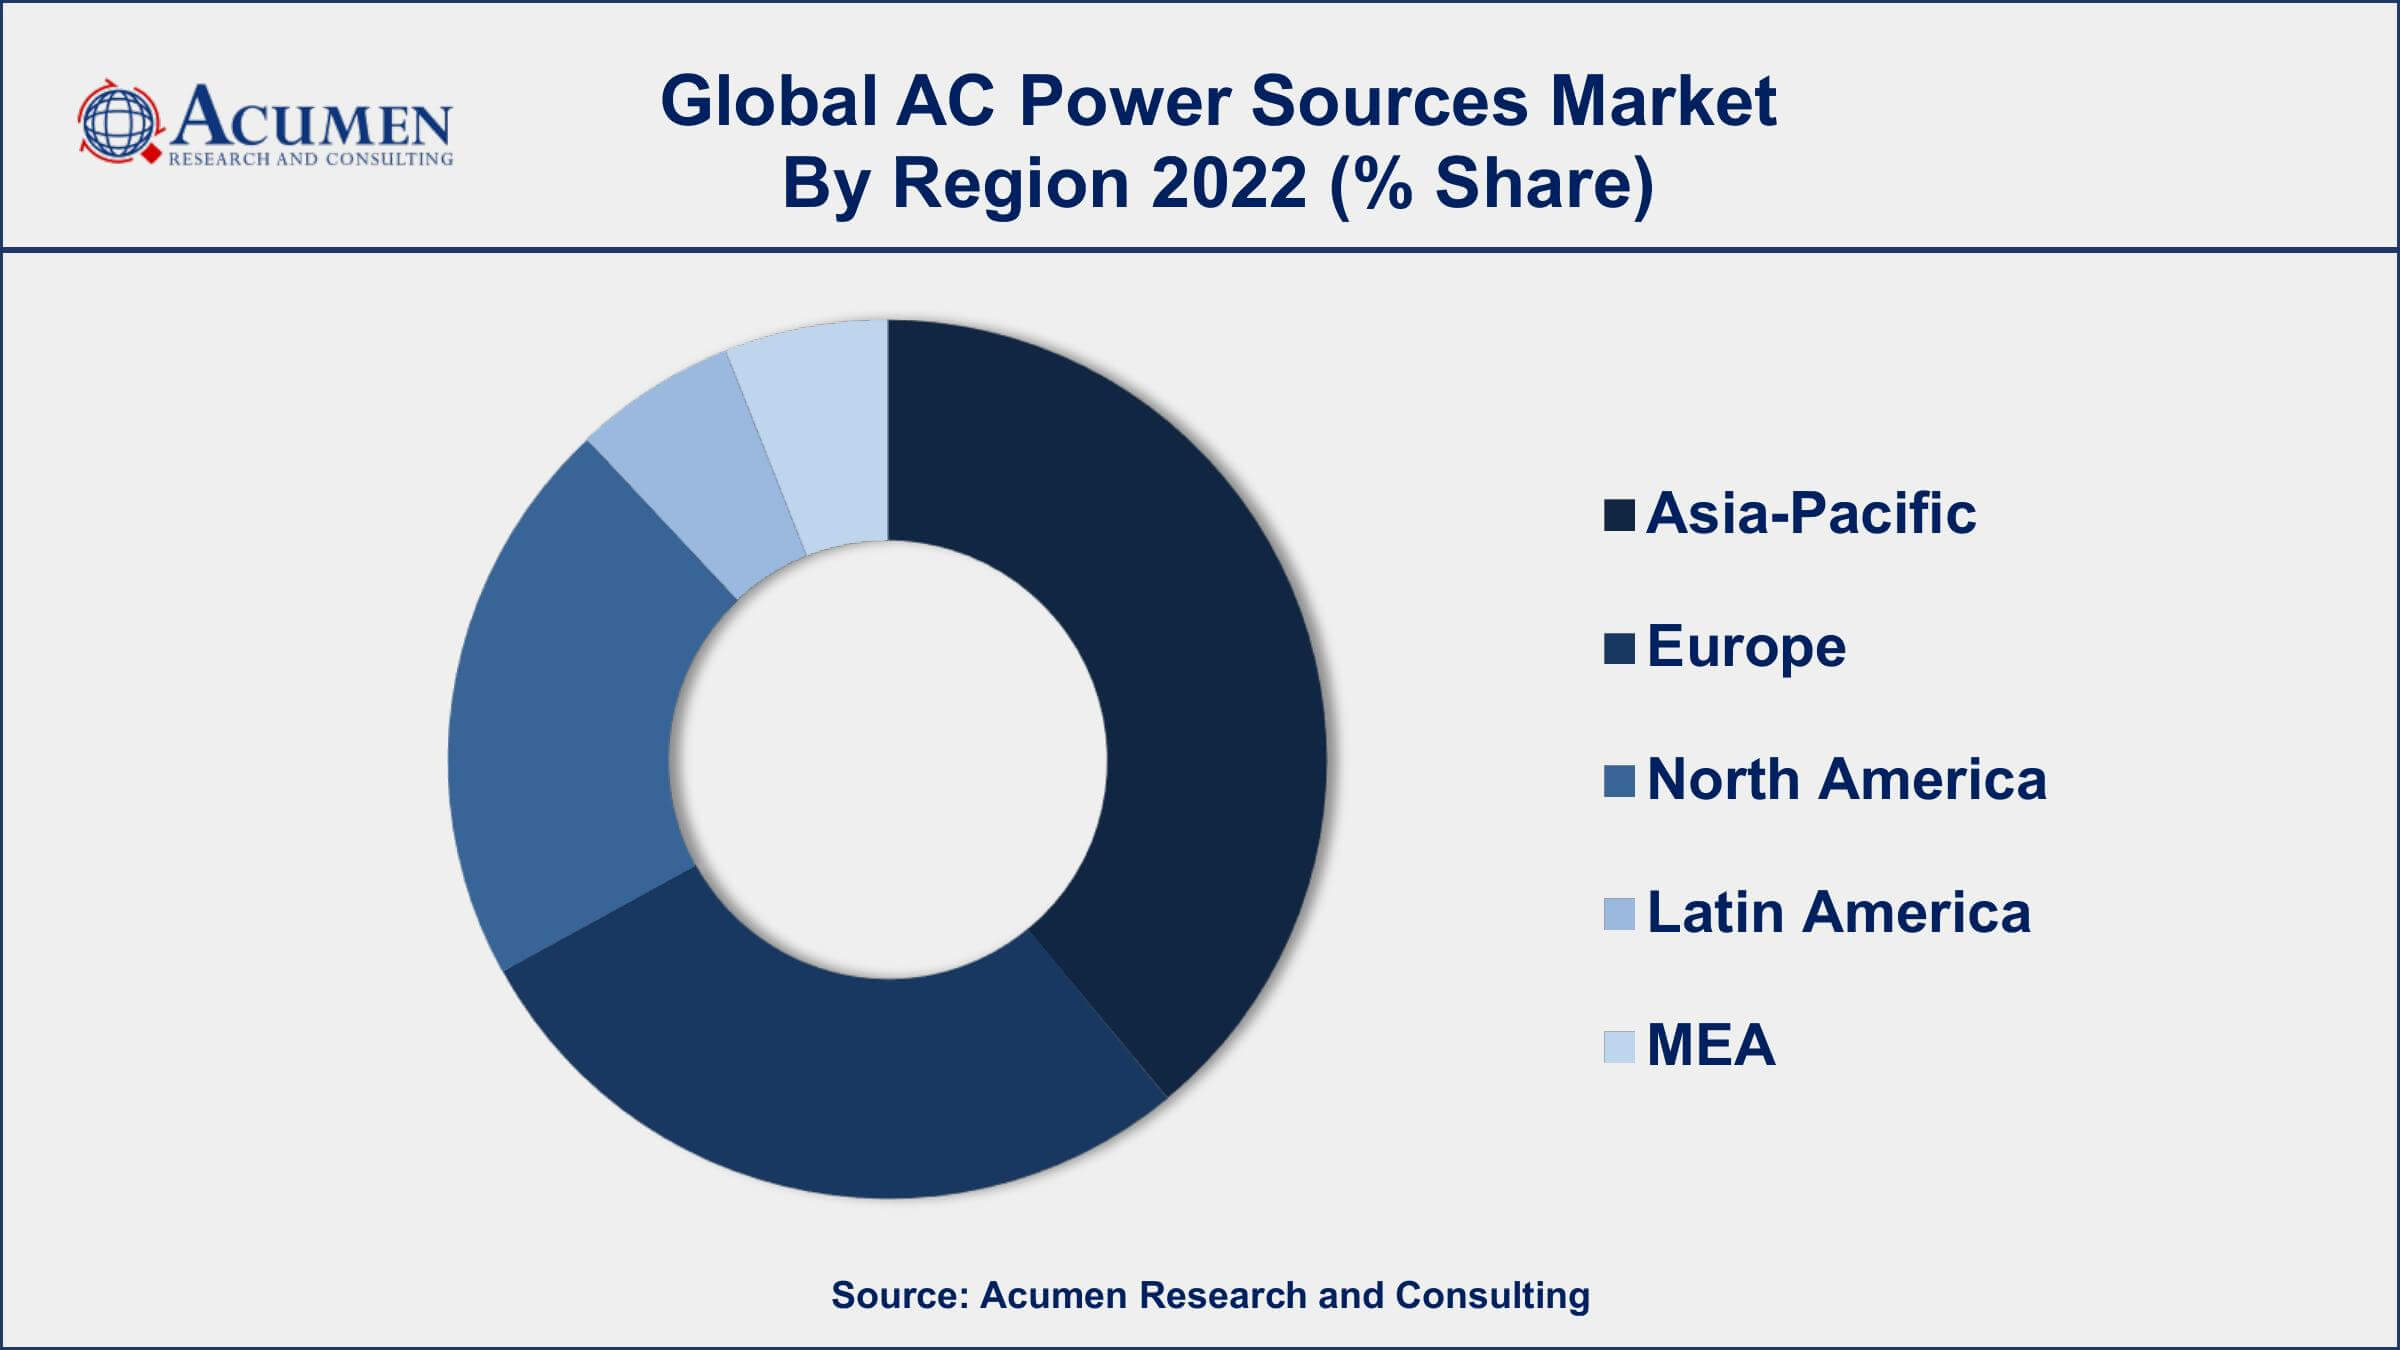 AC Power Sources Market Drivers